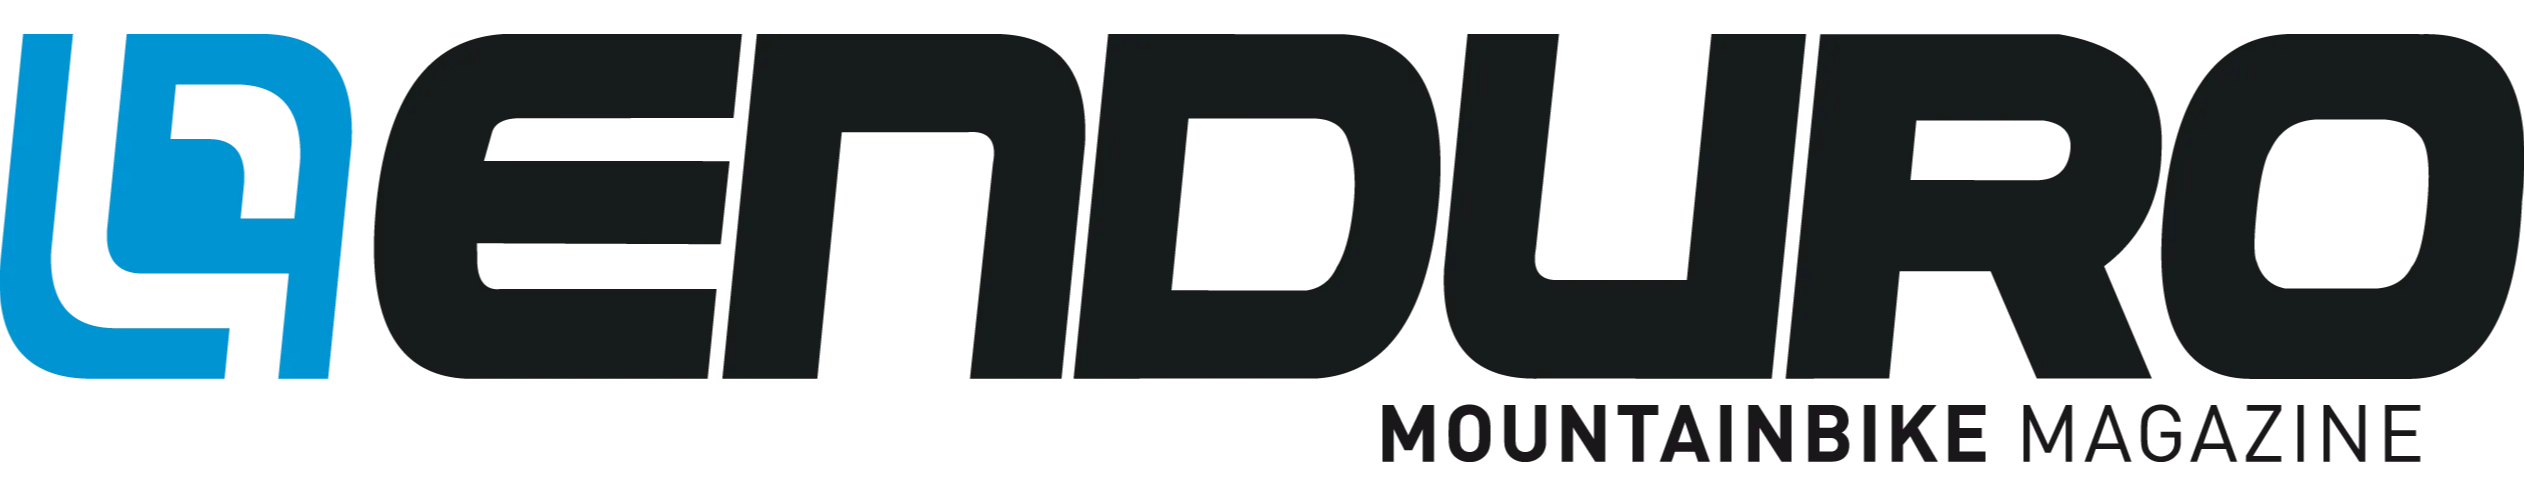 Enduro Mountain Bike Magazine Logo